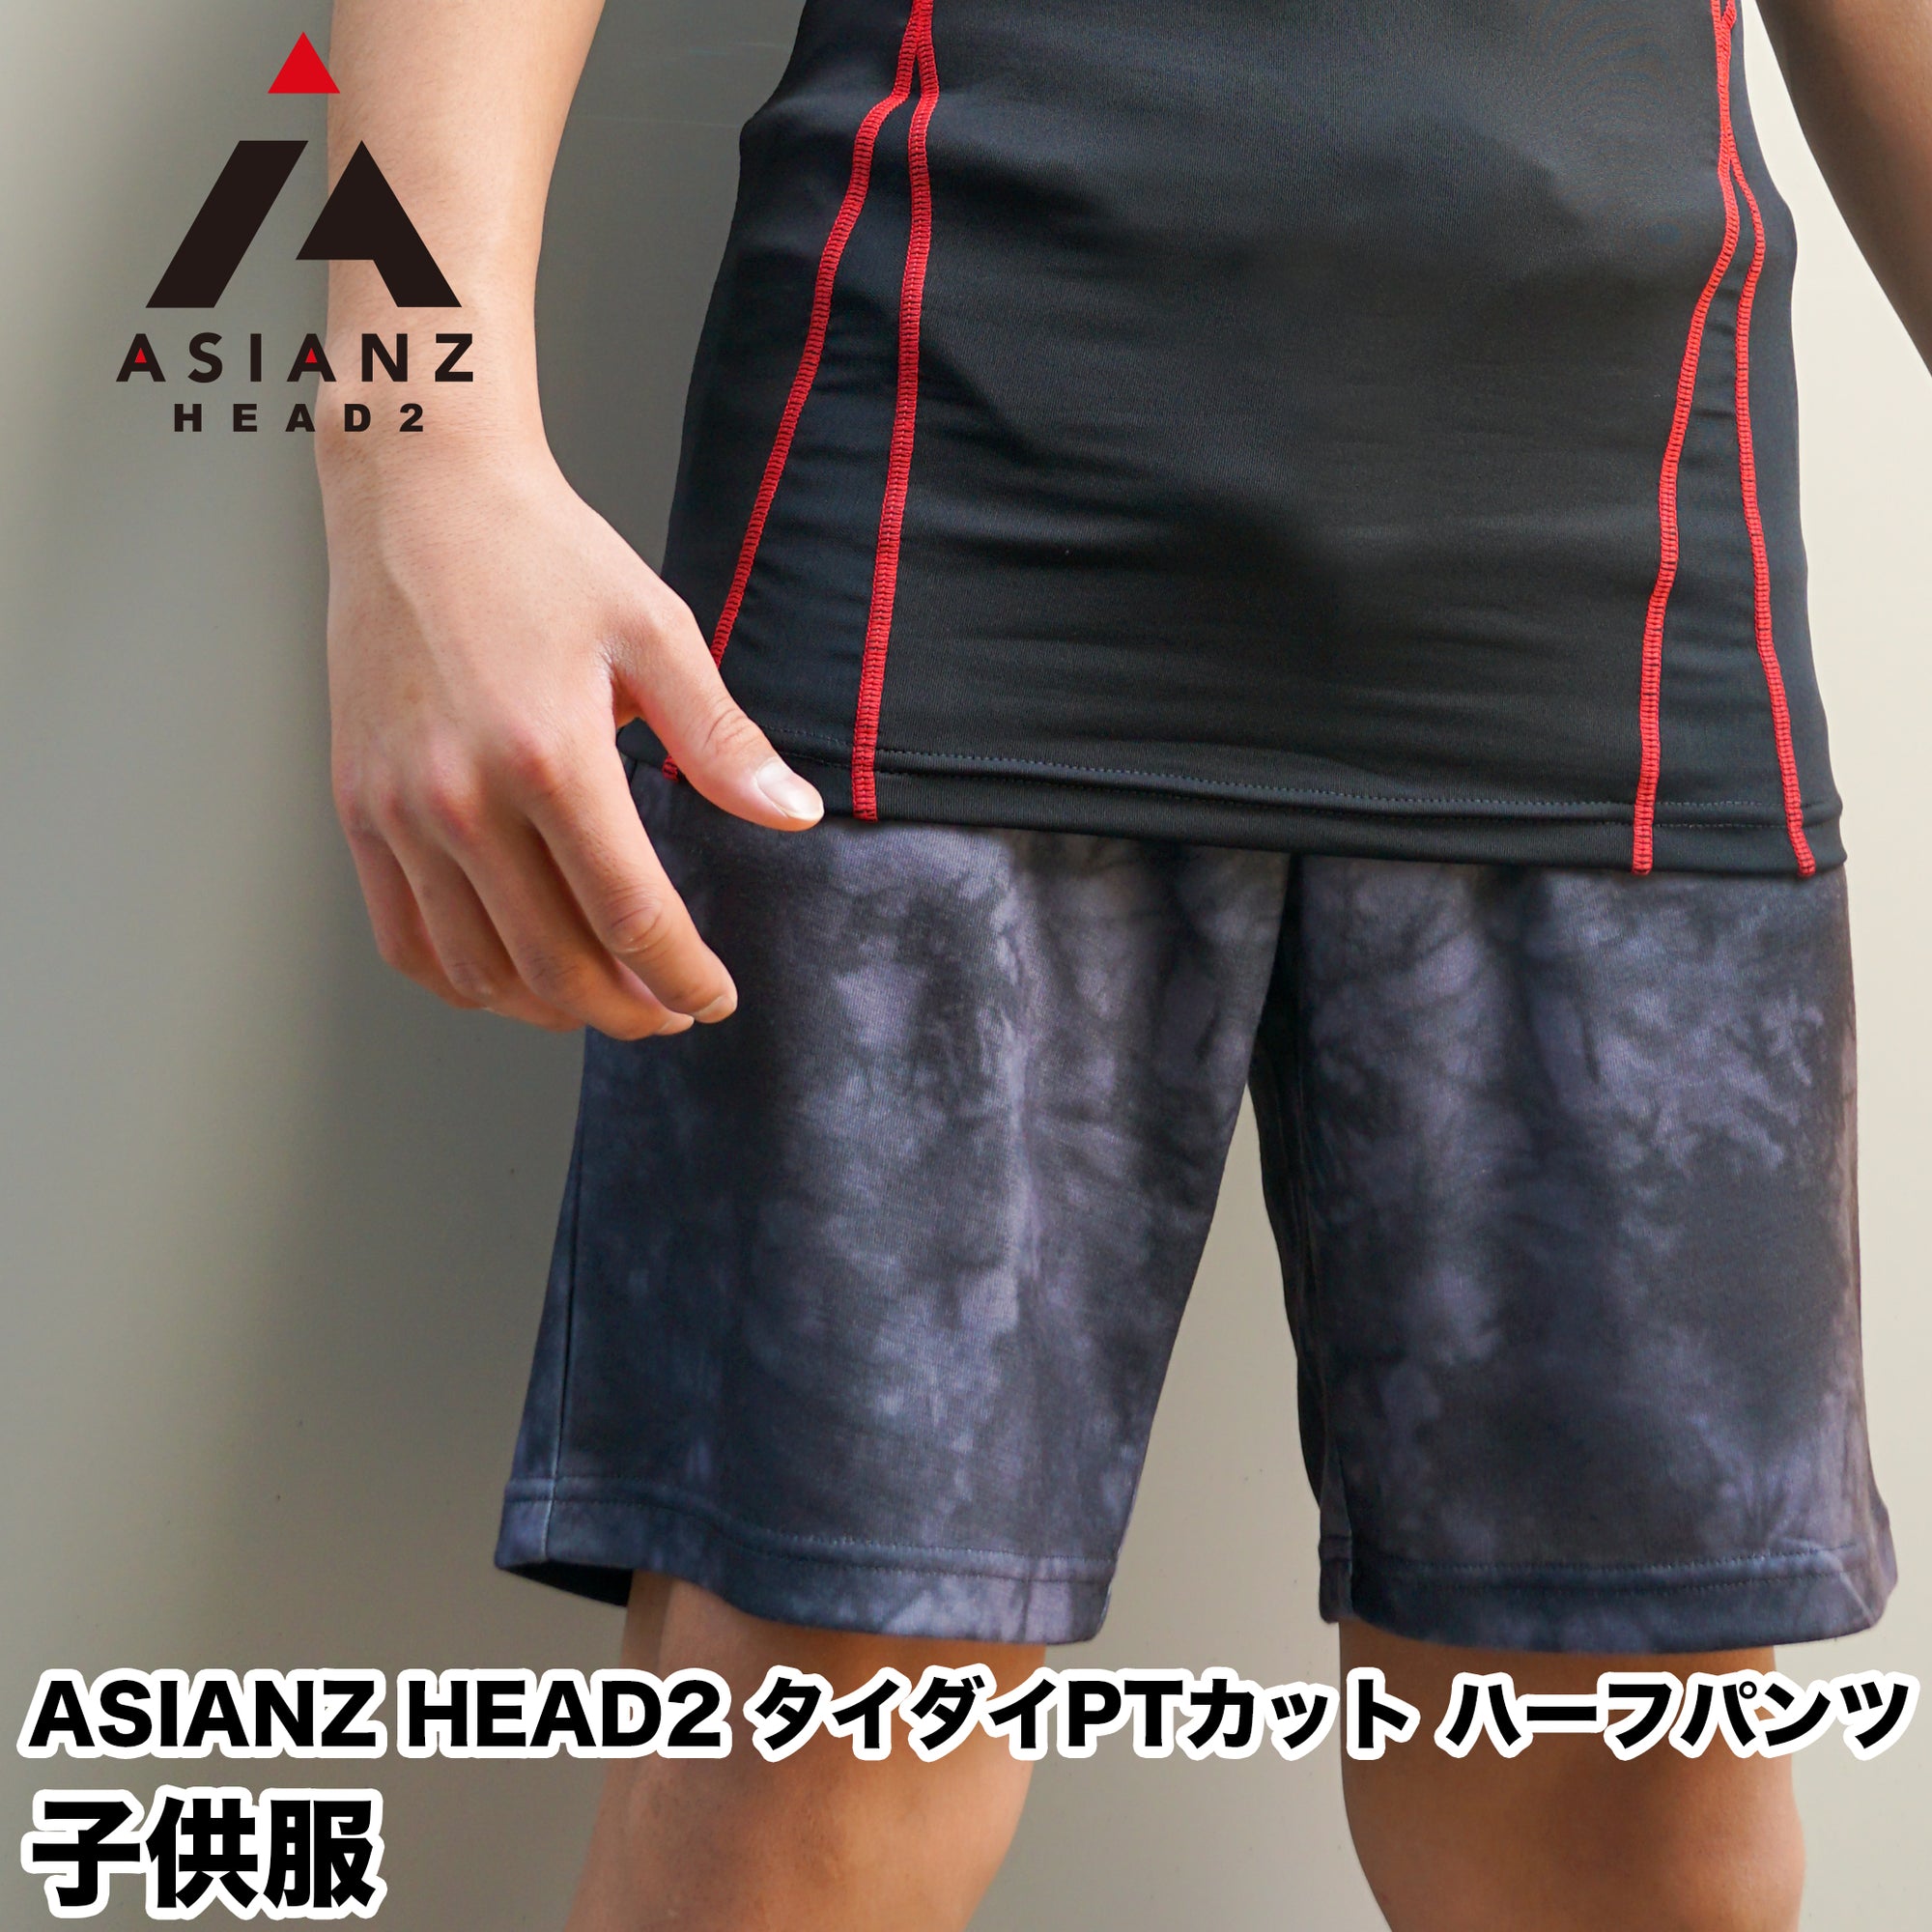 (40%オフ! セール商品)ASIANZ HEAD2 タイダイPTカットハーフパンツ キッズウェアー